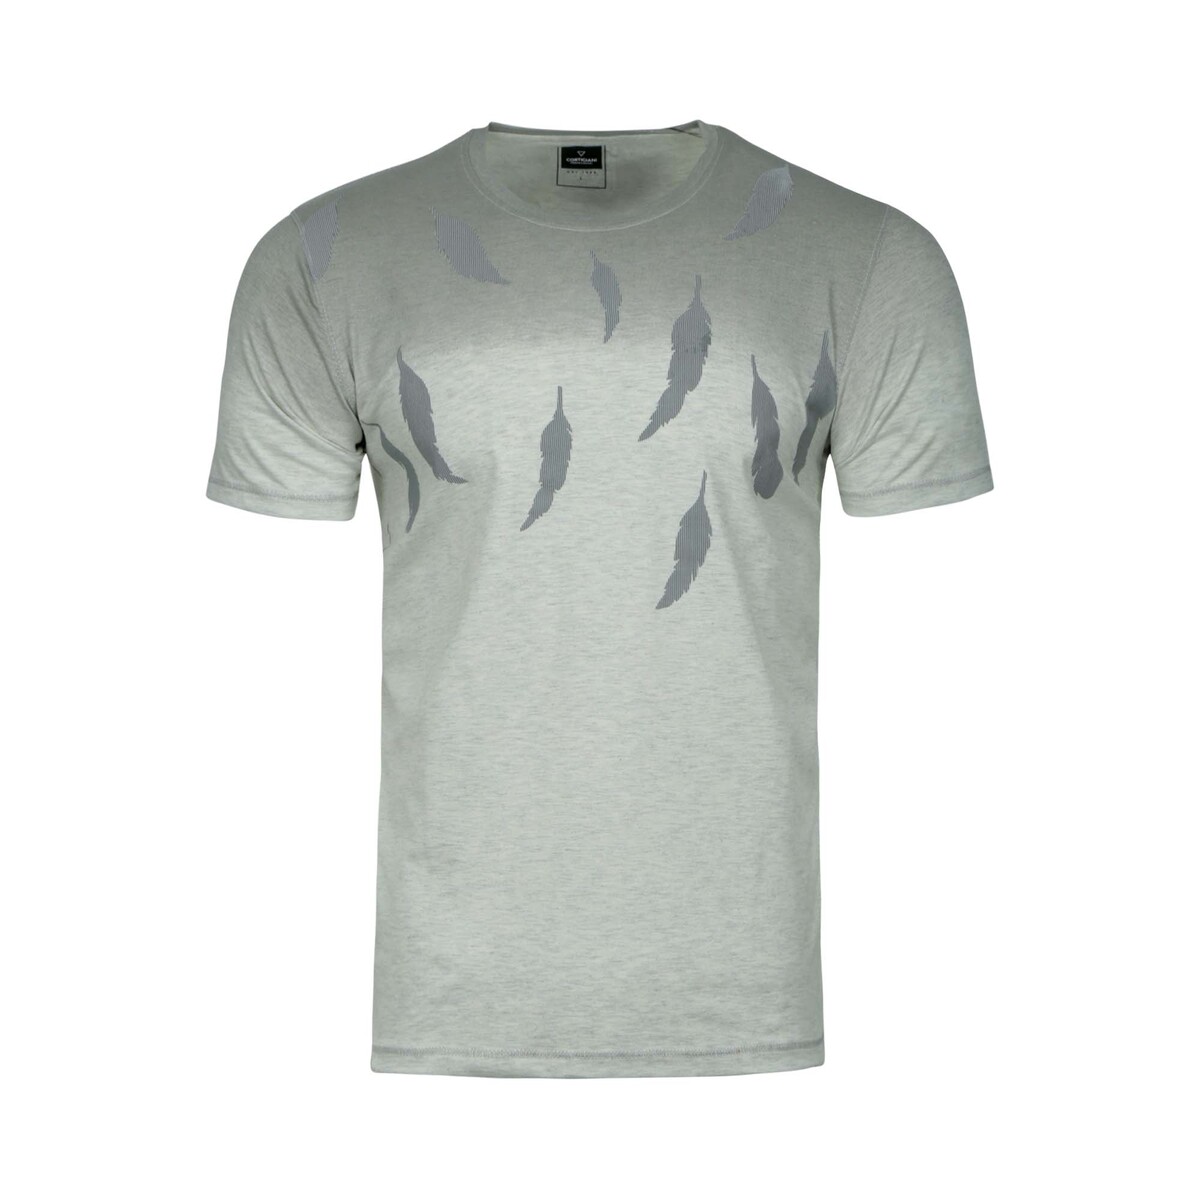 Cortigiani Men's Round Neck T-Shirt Short Sleeve BSR025 Beige Medium